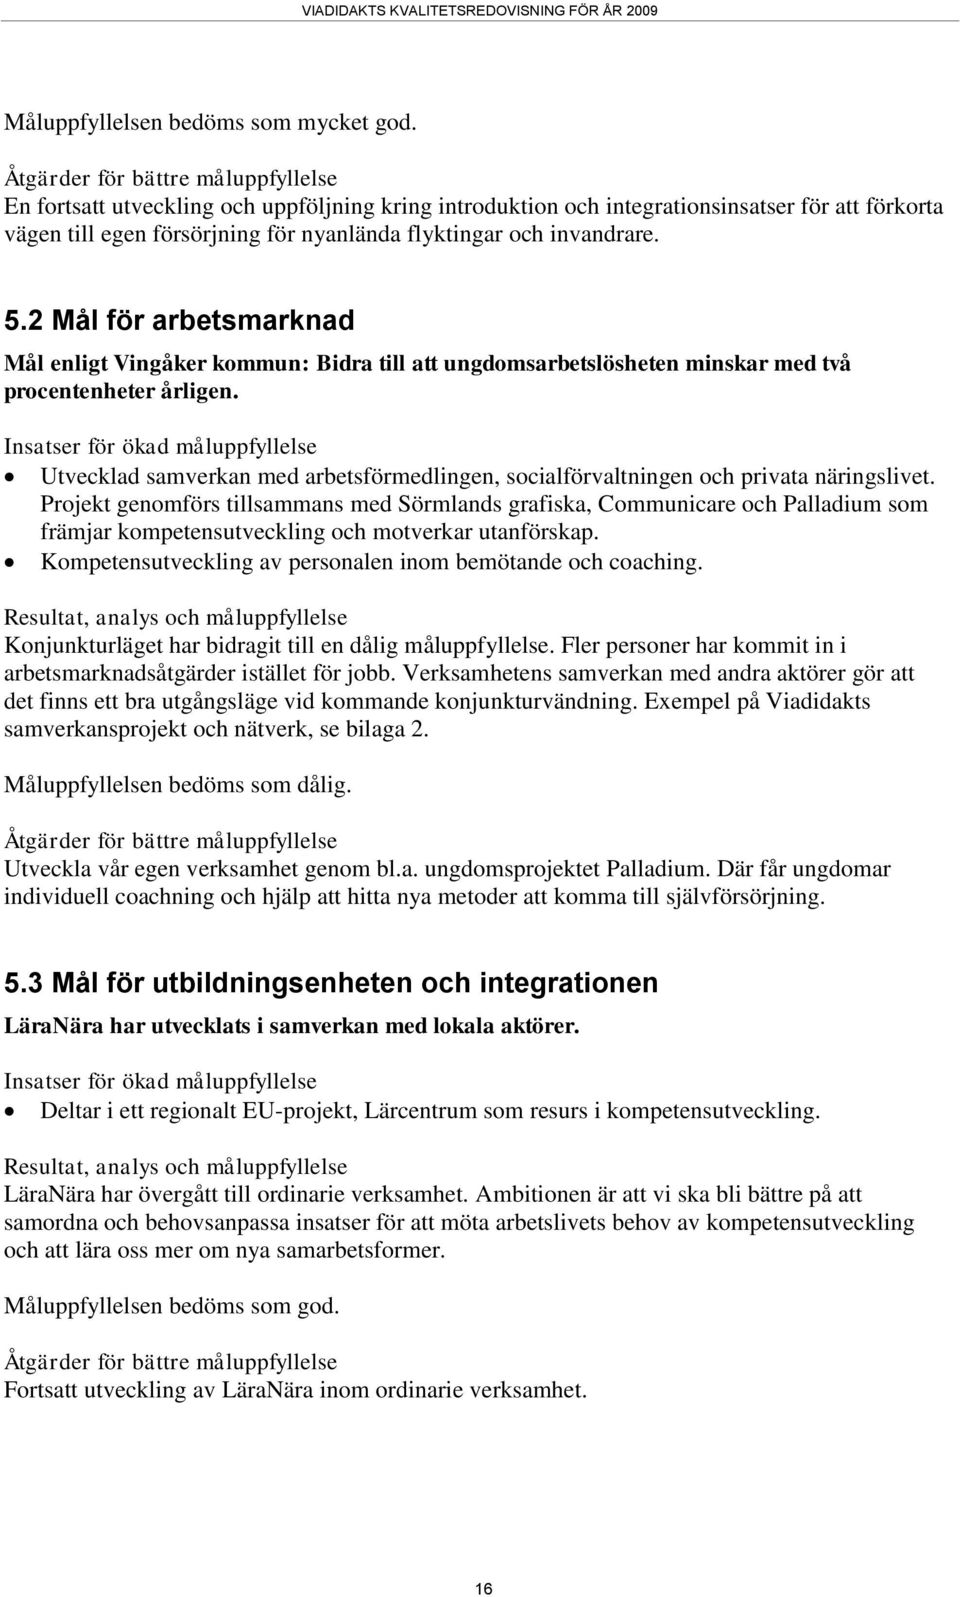 invandrare. 5.2 Mål för arbetsmarknad Mål enligt Vingåker kommun: Bidra till att ungdomsarbetslösheten minskar med två procentenheter årligen.